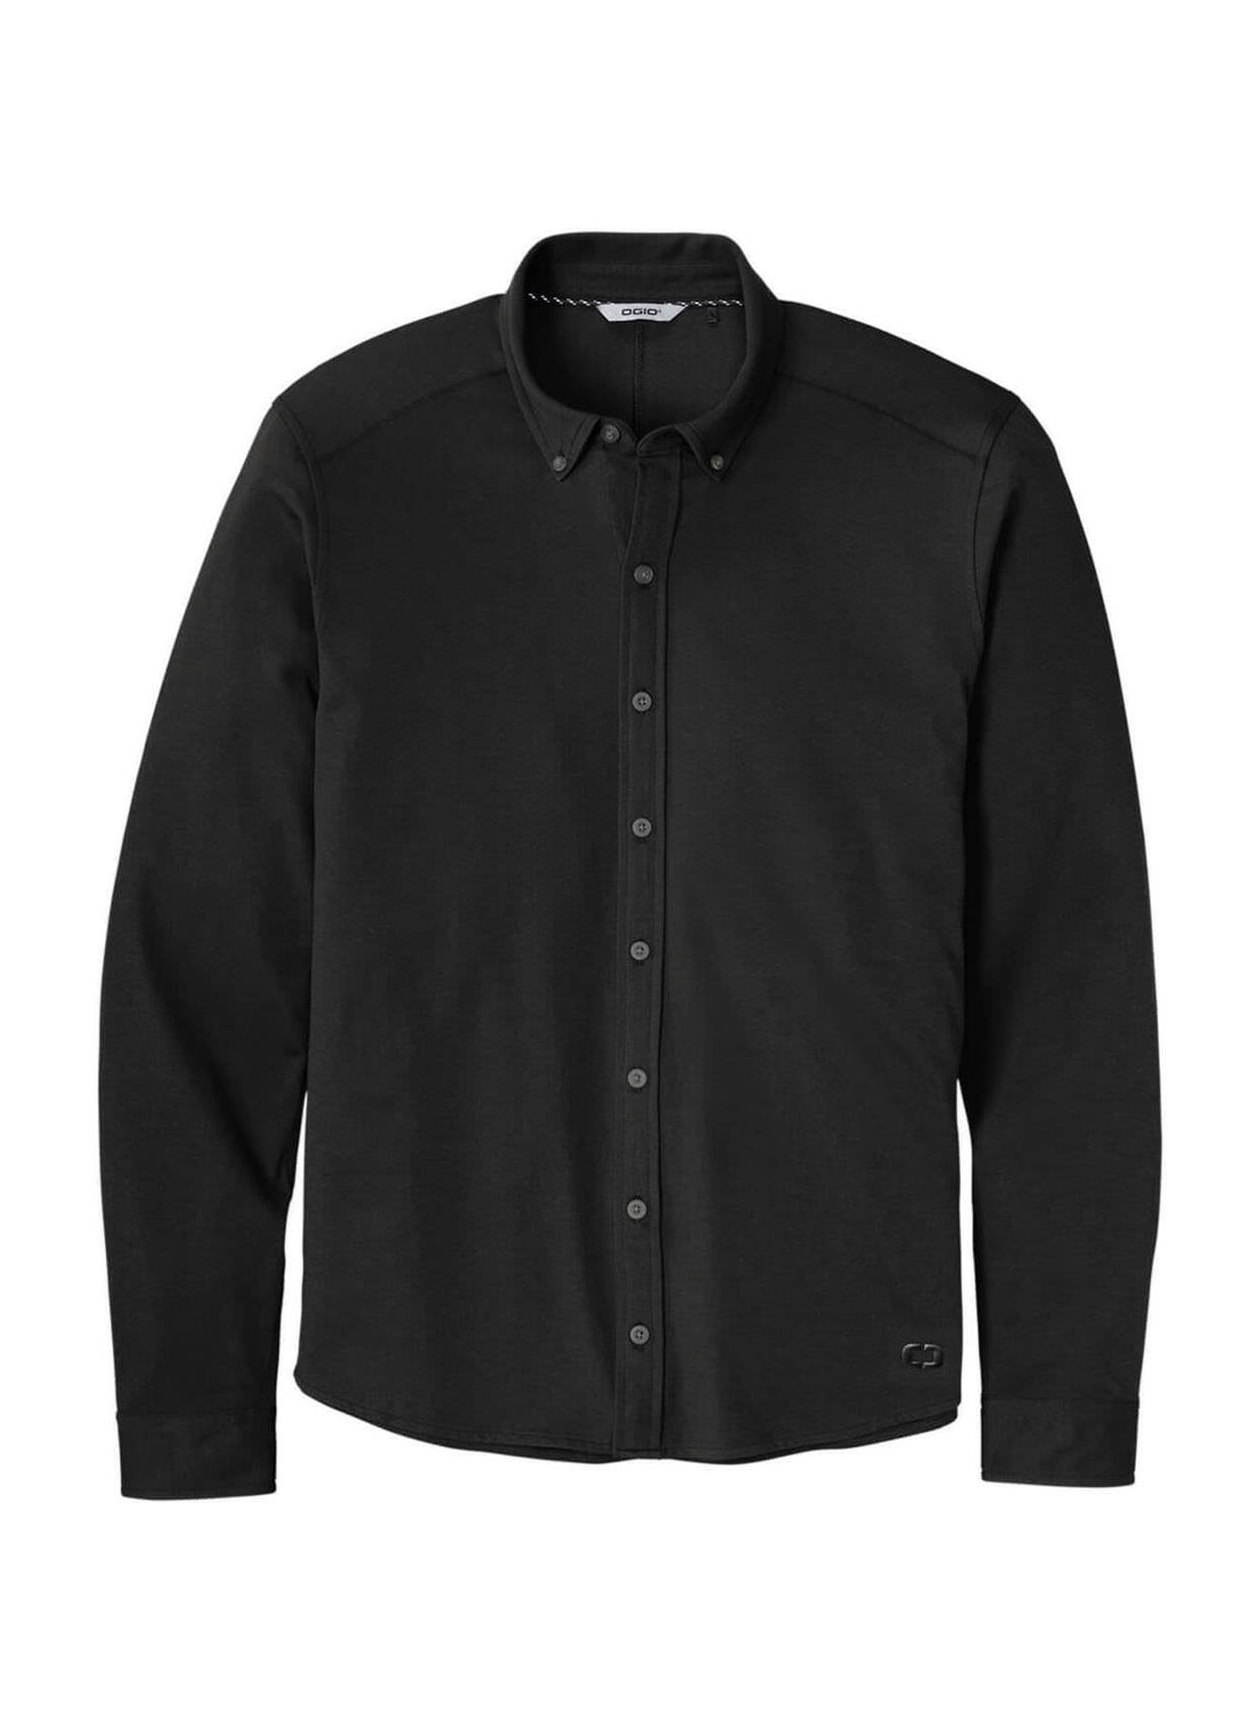 Custom Work Shirts Screen Printed Spyder Men's Black Transit Shirt Jacket